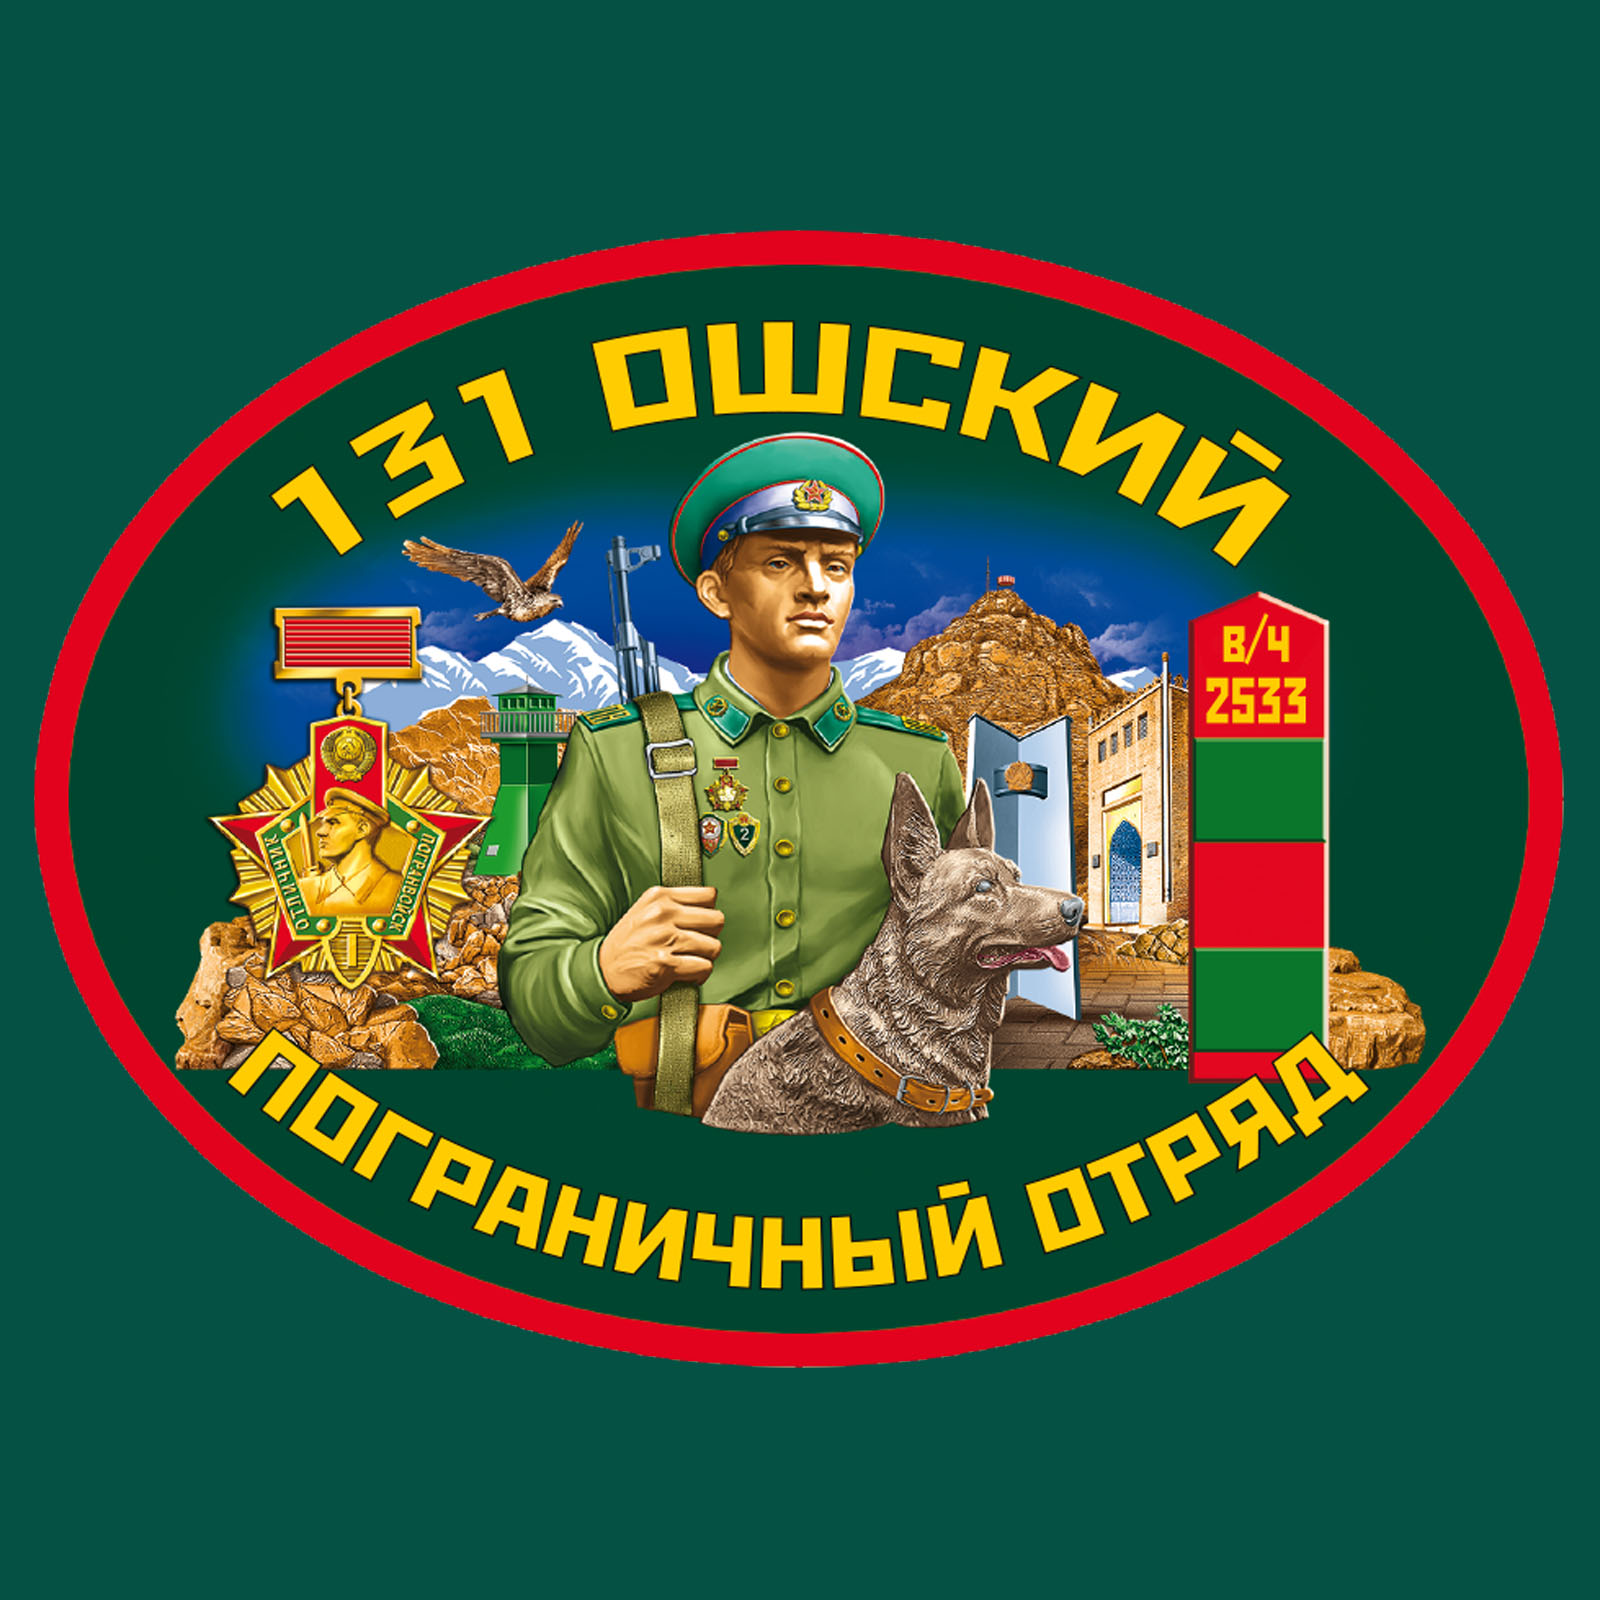 Зелёная футболка "131 Ошский пограничный отряд" 